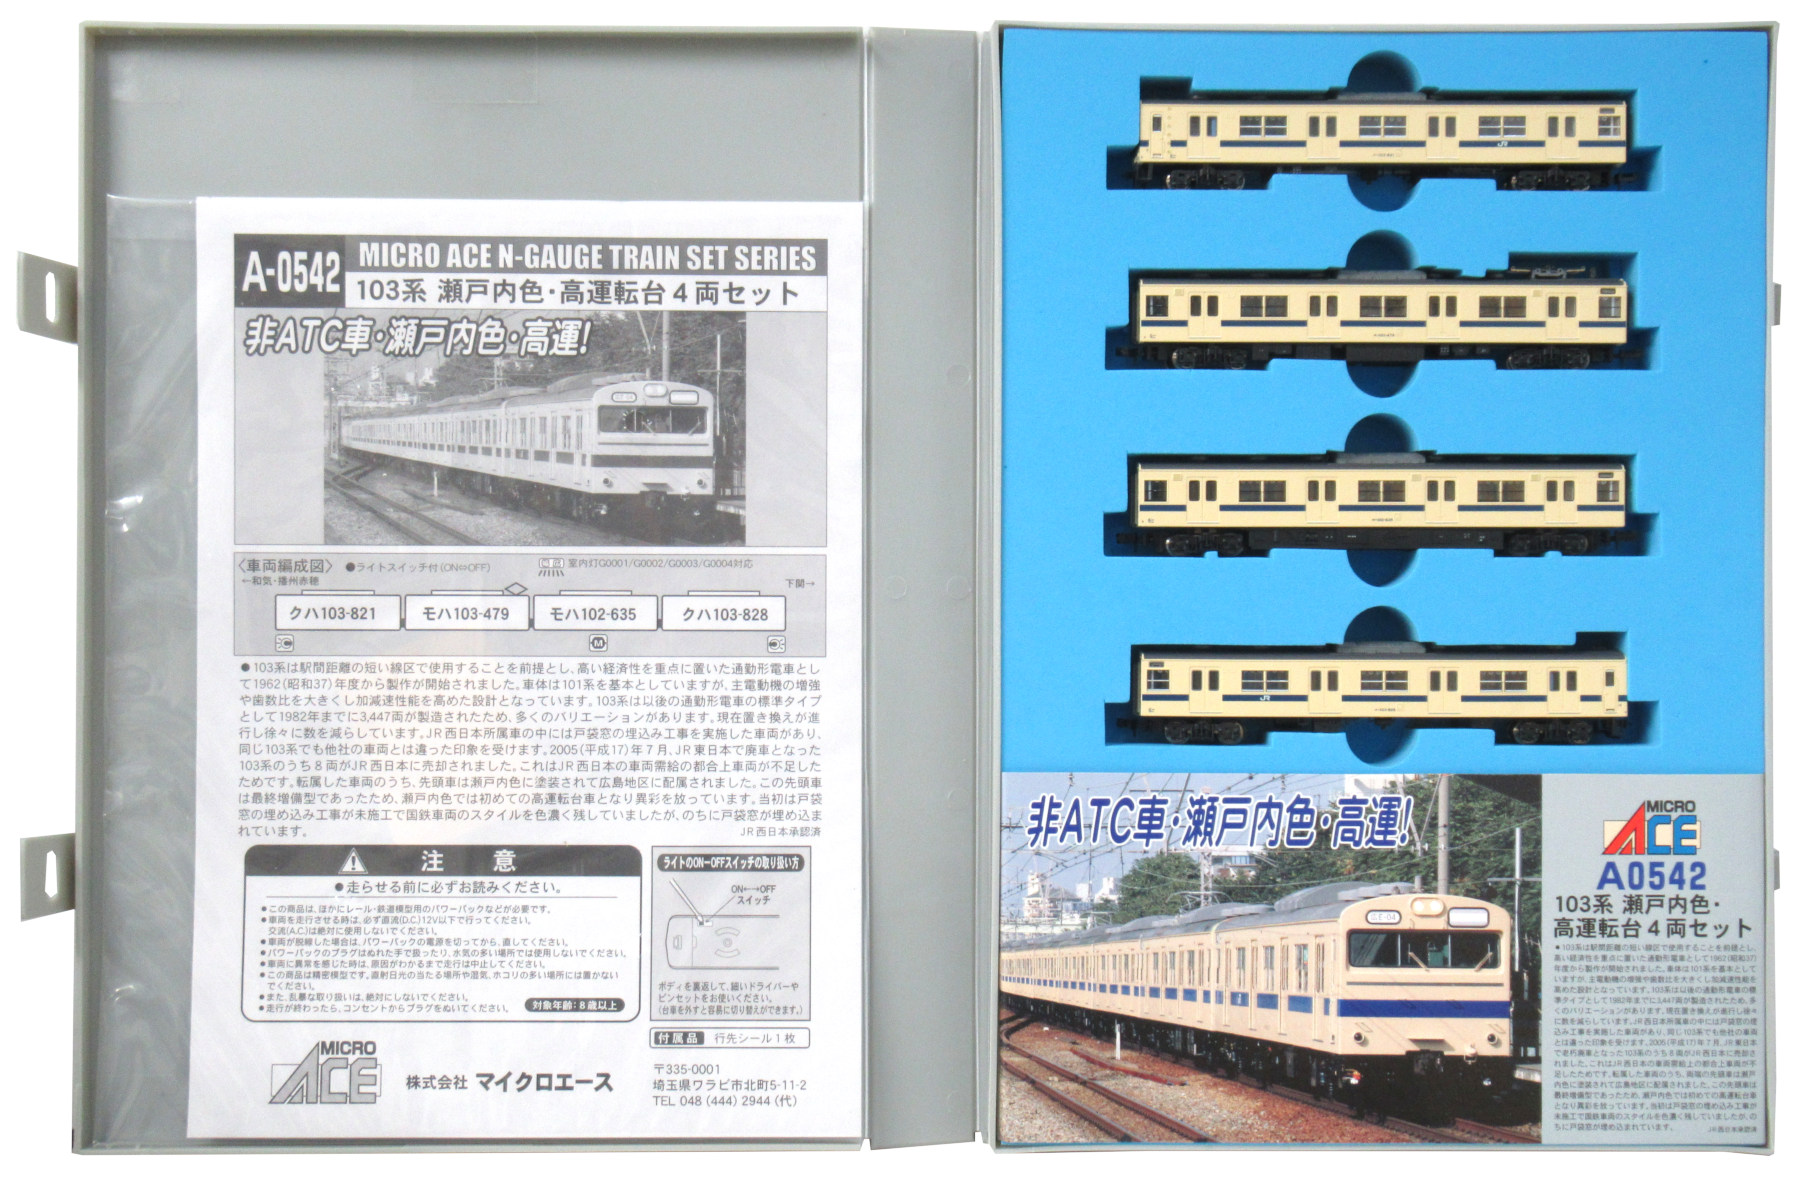 マイクロエース A-0546 103系 阪和線 A-0542 103系 瀬戸内色 - 鉄道模型